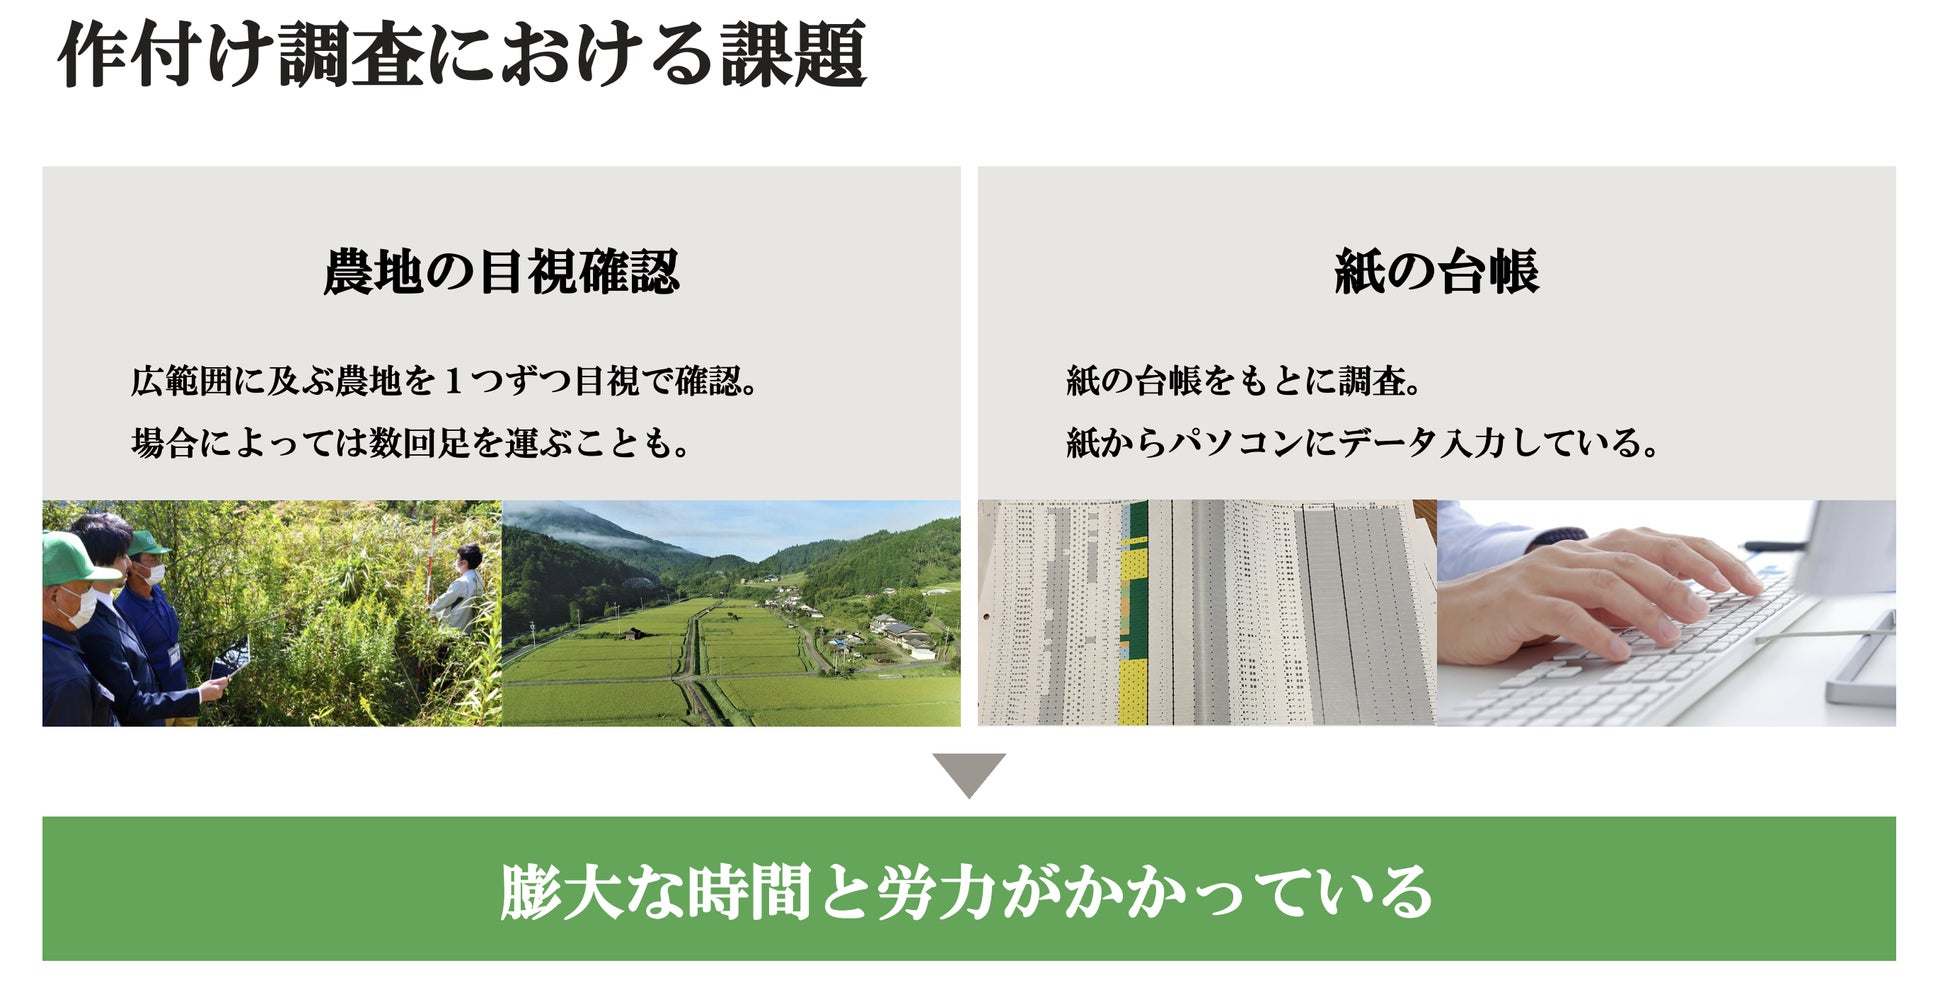 サグリの作付け調査効率化アプリ「デタバ」が、青森県大鰐町に全国初の導入決定のサブ画像3